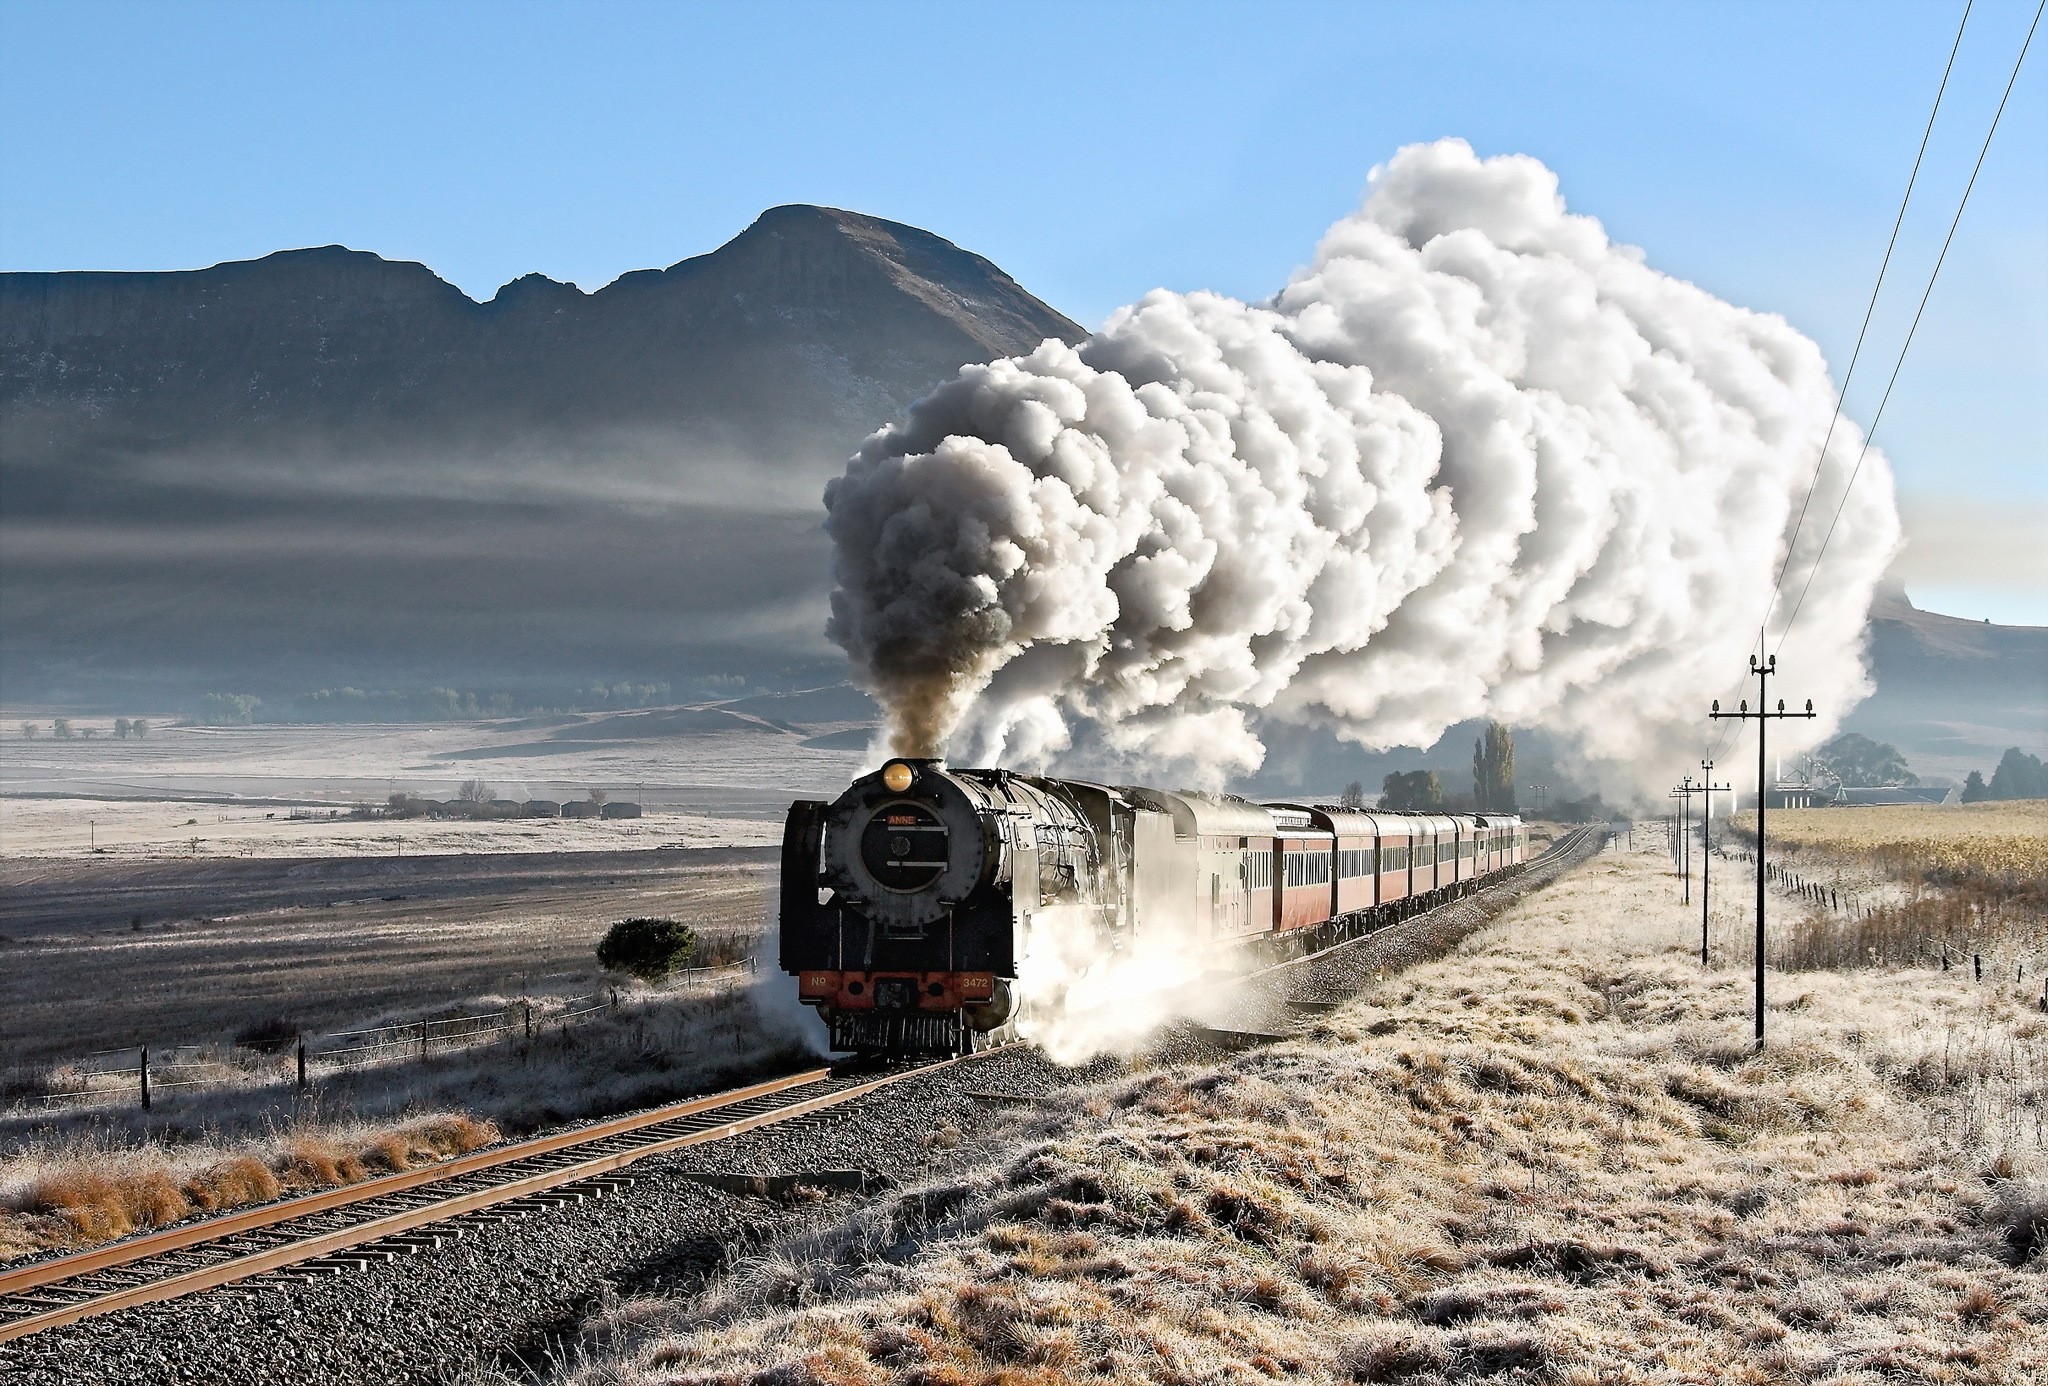 General 2048x1386 train vehicle railway Steam Train steam locomotive locomotive landscape